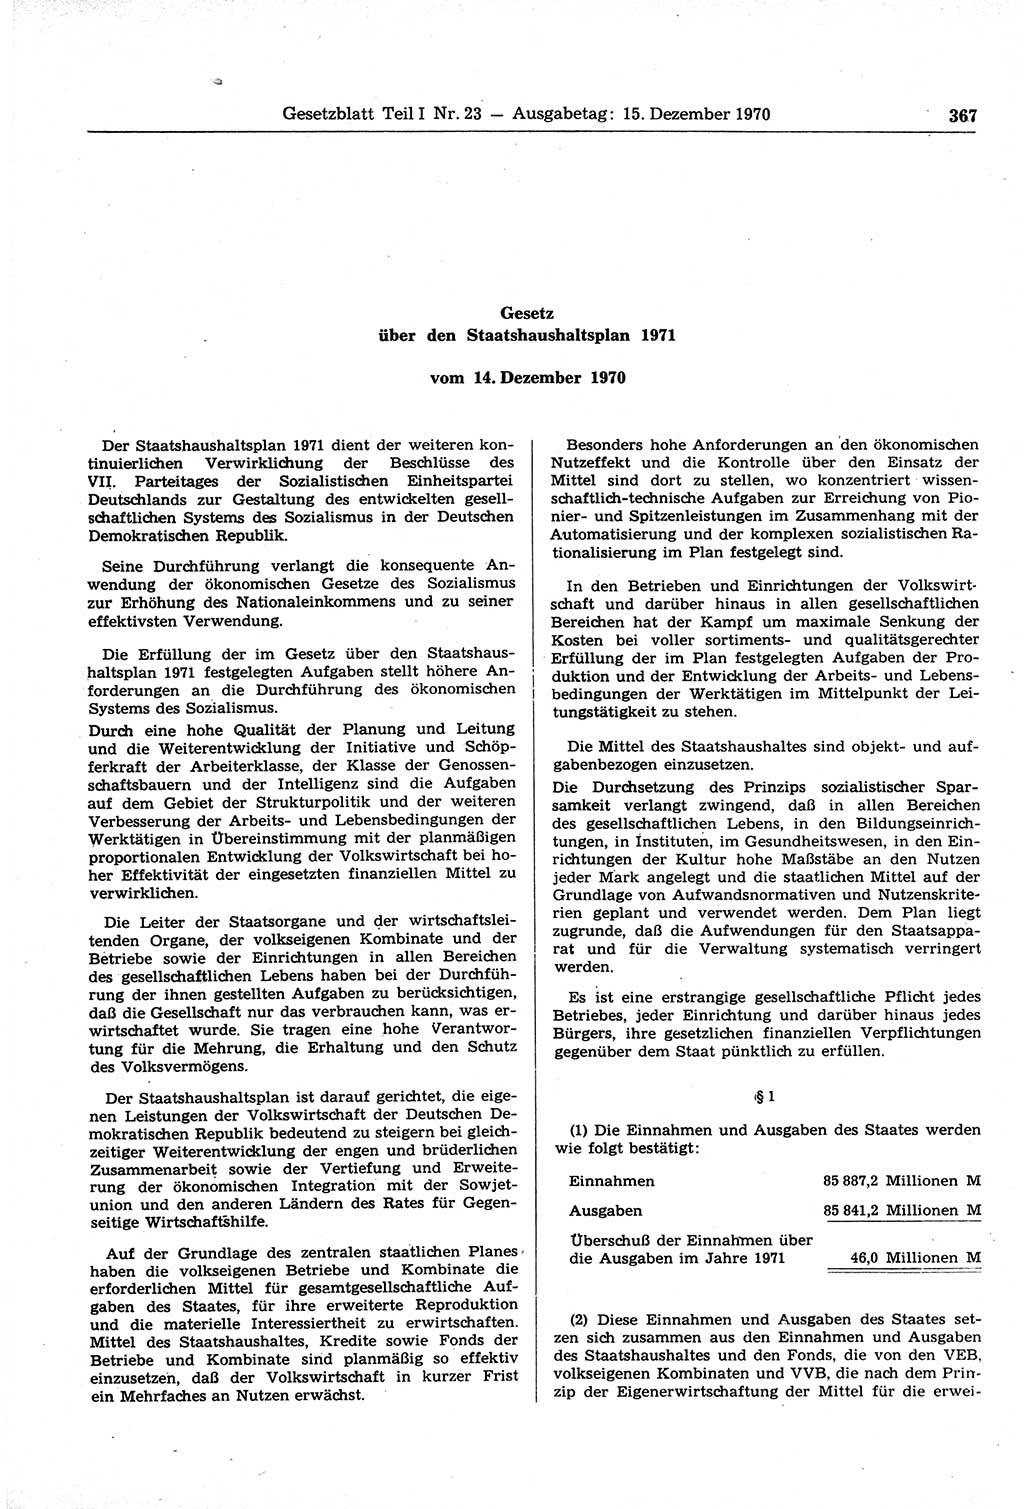 Gesetzblatt (GBl.) der Deutschen Demokratischen Republik (DDR) Teil Ⅰ 1970, Seite 367 (GBl. DDR Ⅰ 1970, S. 367)